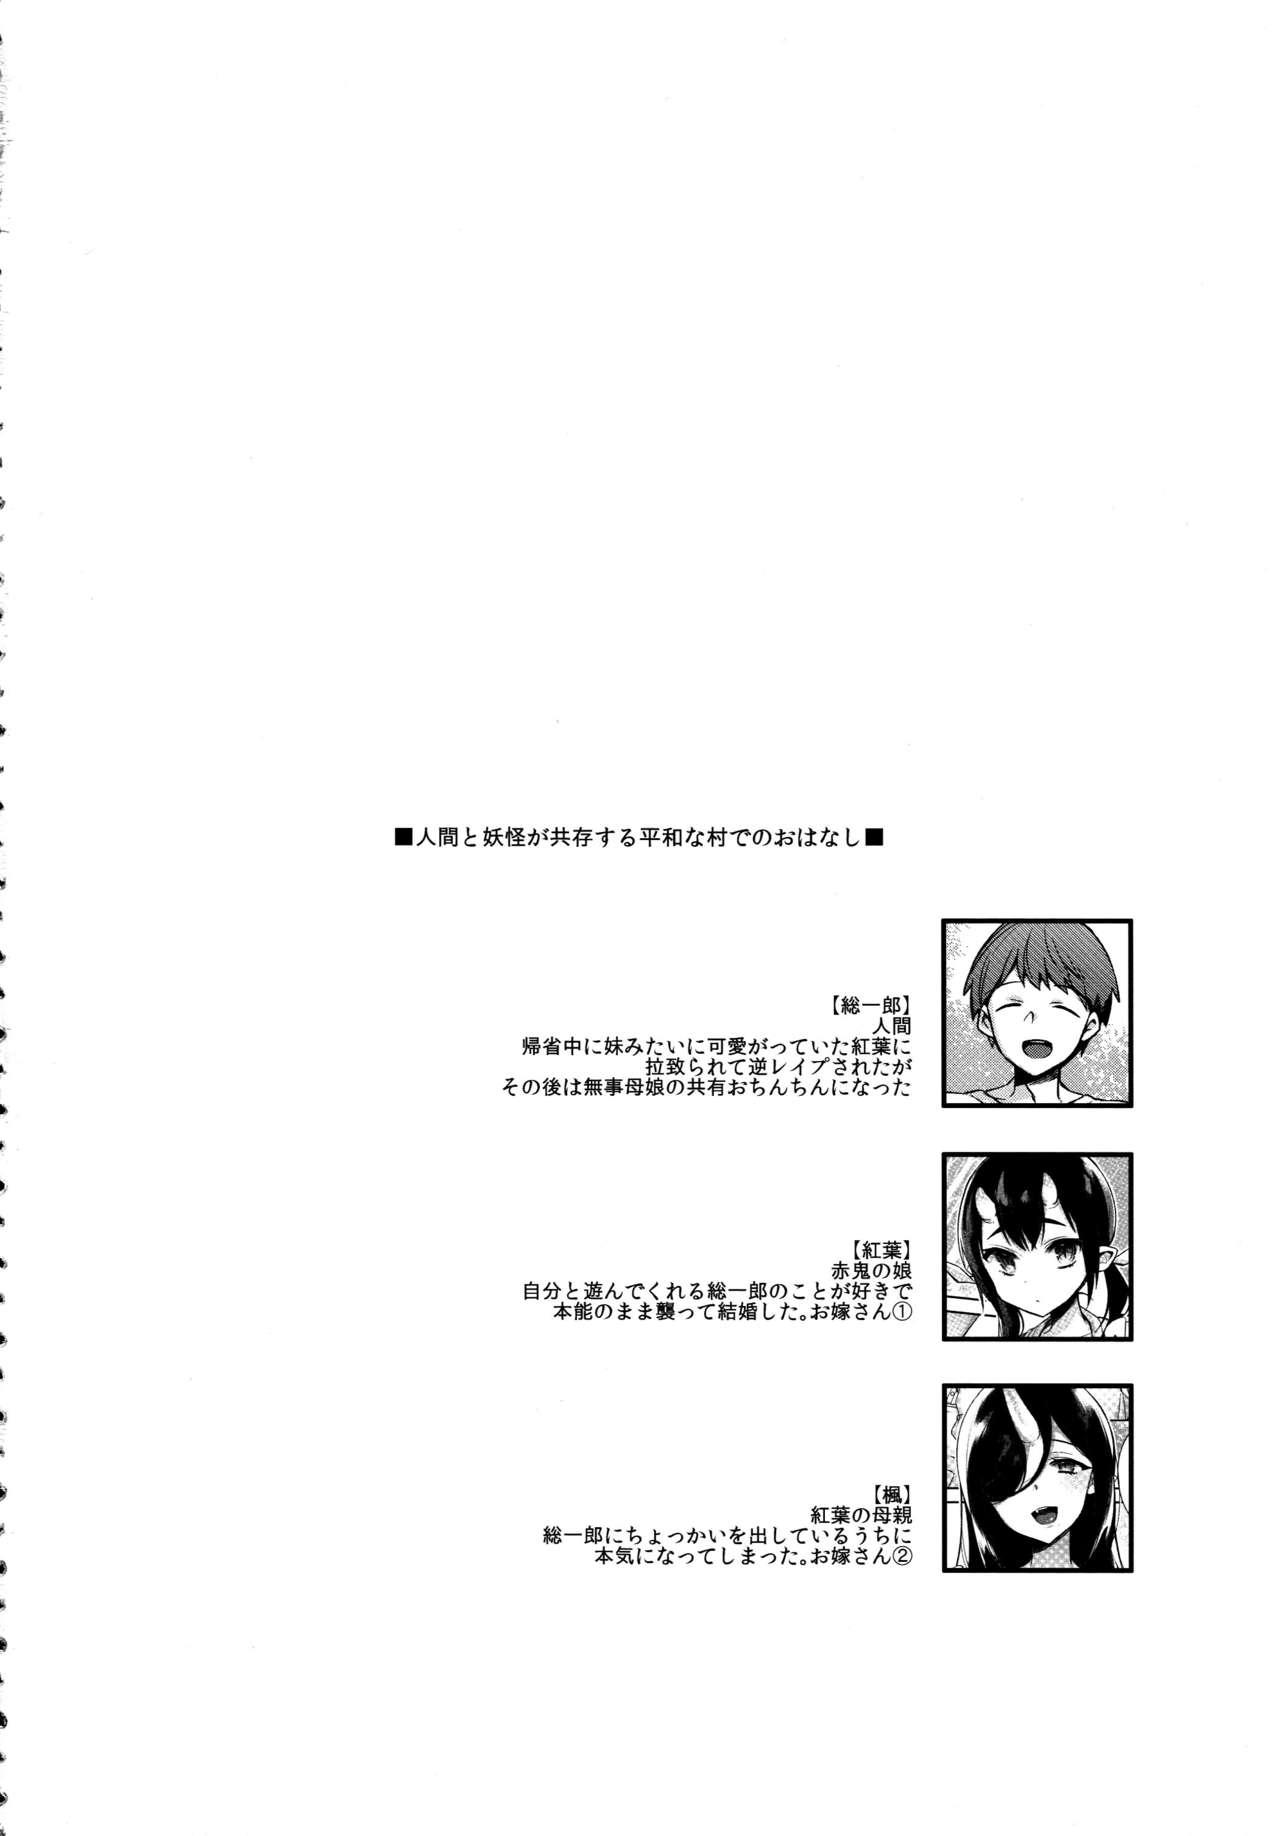 Behind Oni no Shimai wa Hito no Osu to Kozukuri ga Shitai - Original Tanned - Page 5